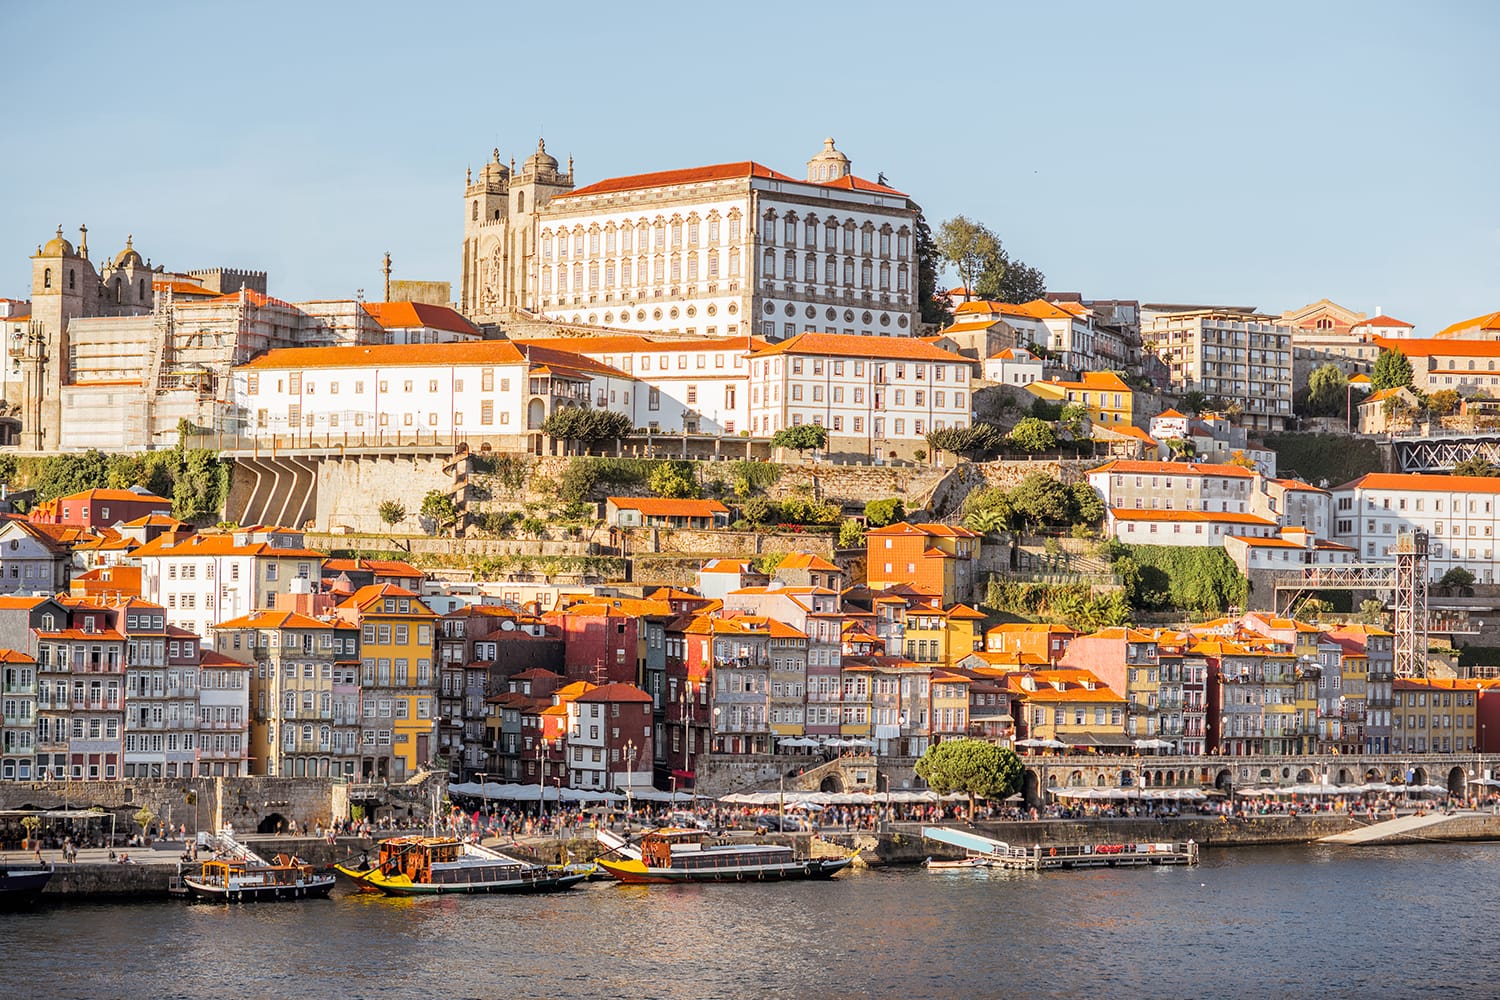 Άποψη τοπίου στην παλιά πόλη στην όχθη του ποταμού Douro στο Πόρτο κατά τη διάρκεια του ηλιοβασιλέματος στην Πορτογαλία